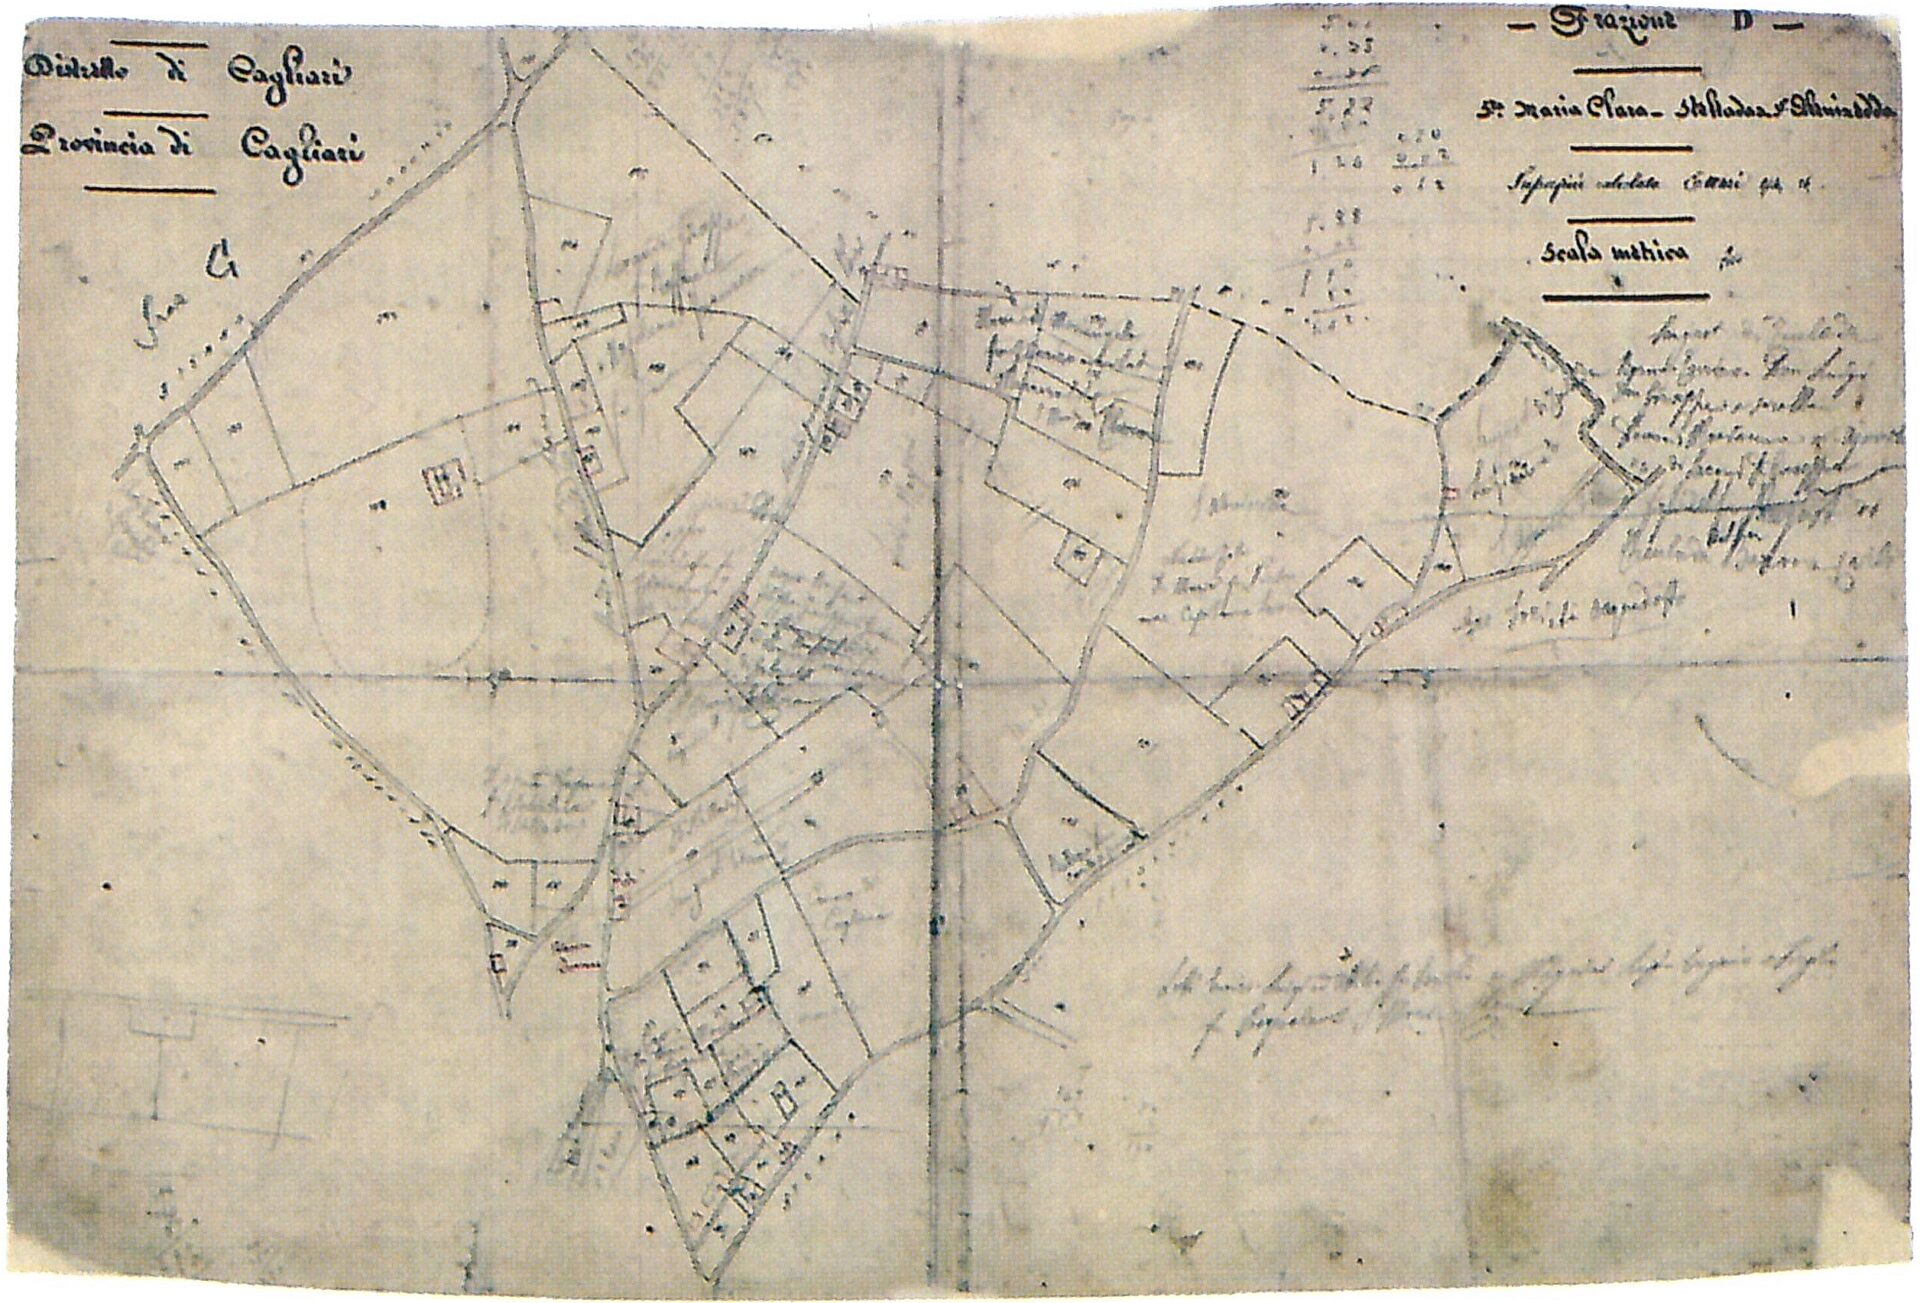 Fig. 2 Archivio di Stato di Cagliari, Uﬂicio Tecnico Erariale, Mappe-Cagliari, Frazione D: S. Maria Chiara, Stelladas, S. Alenixedda